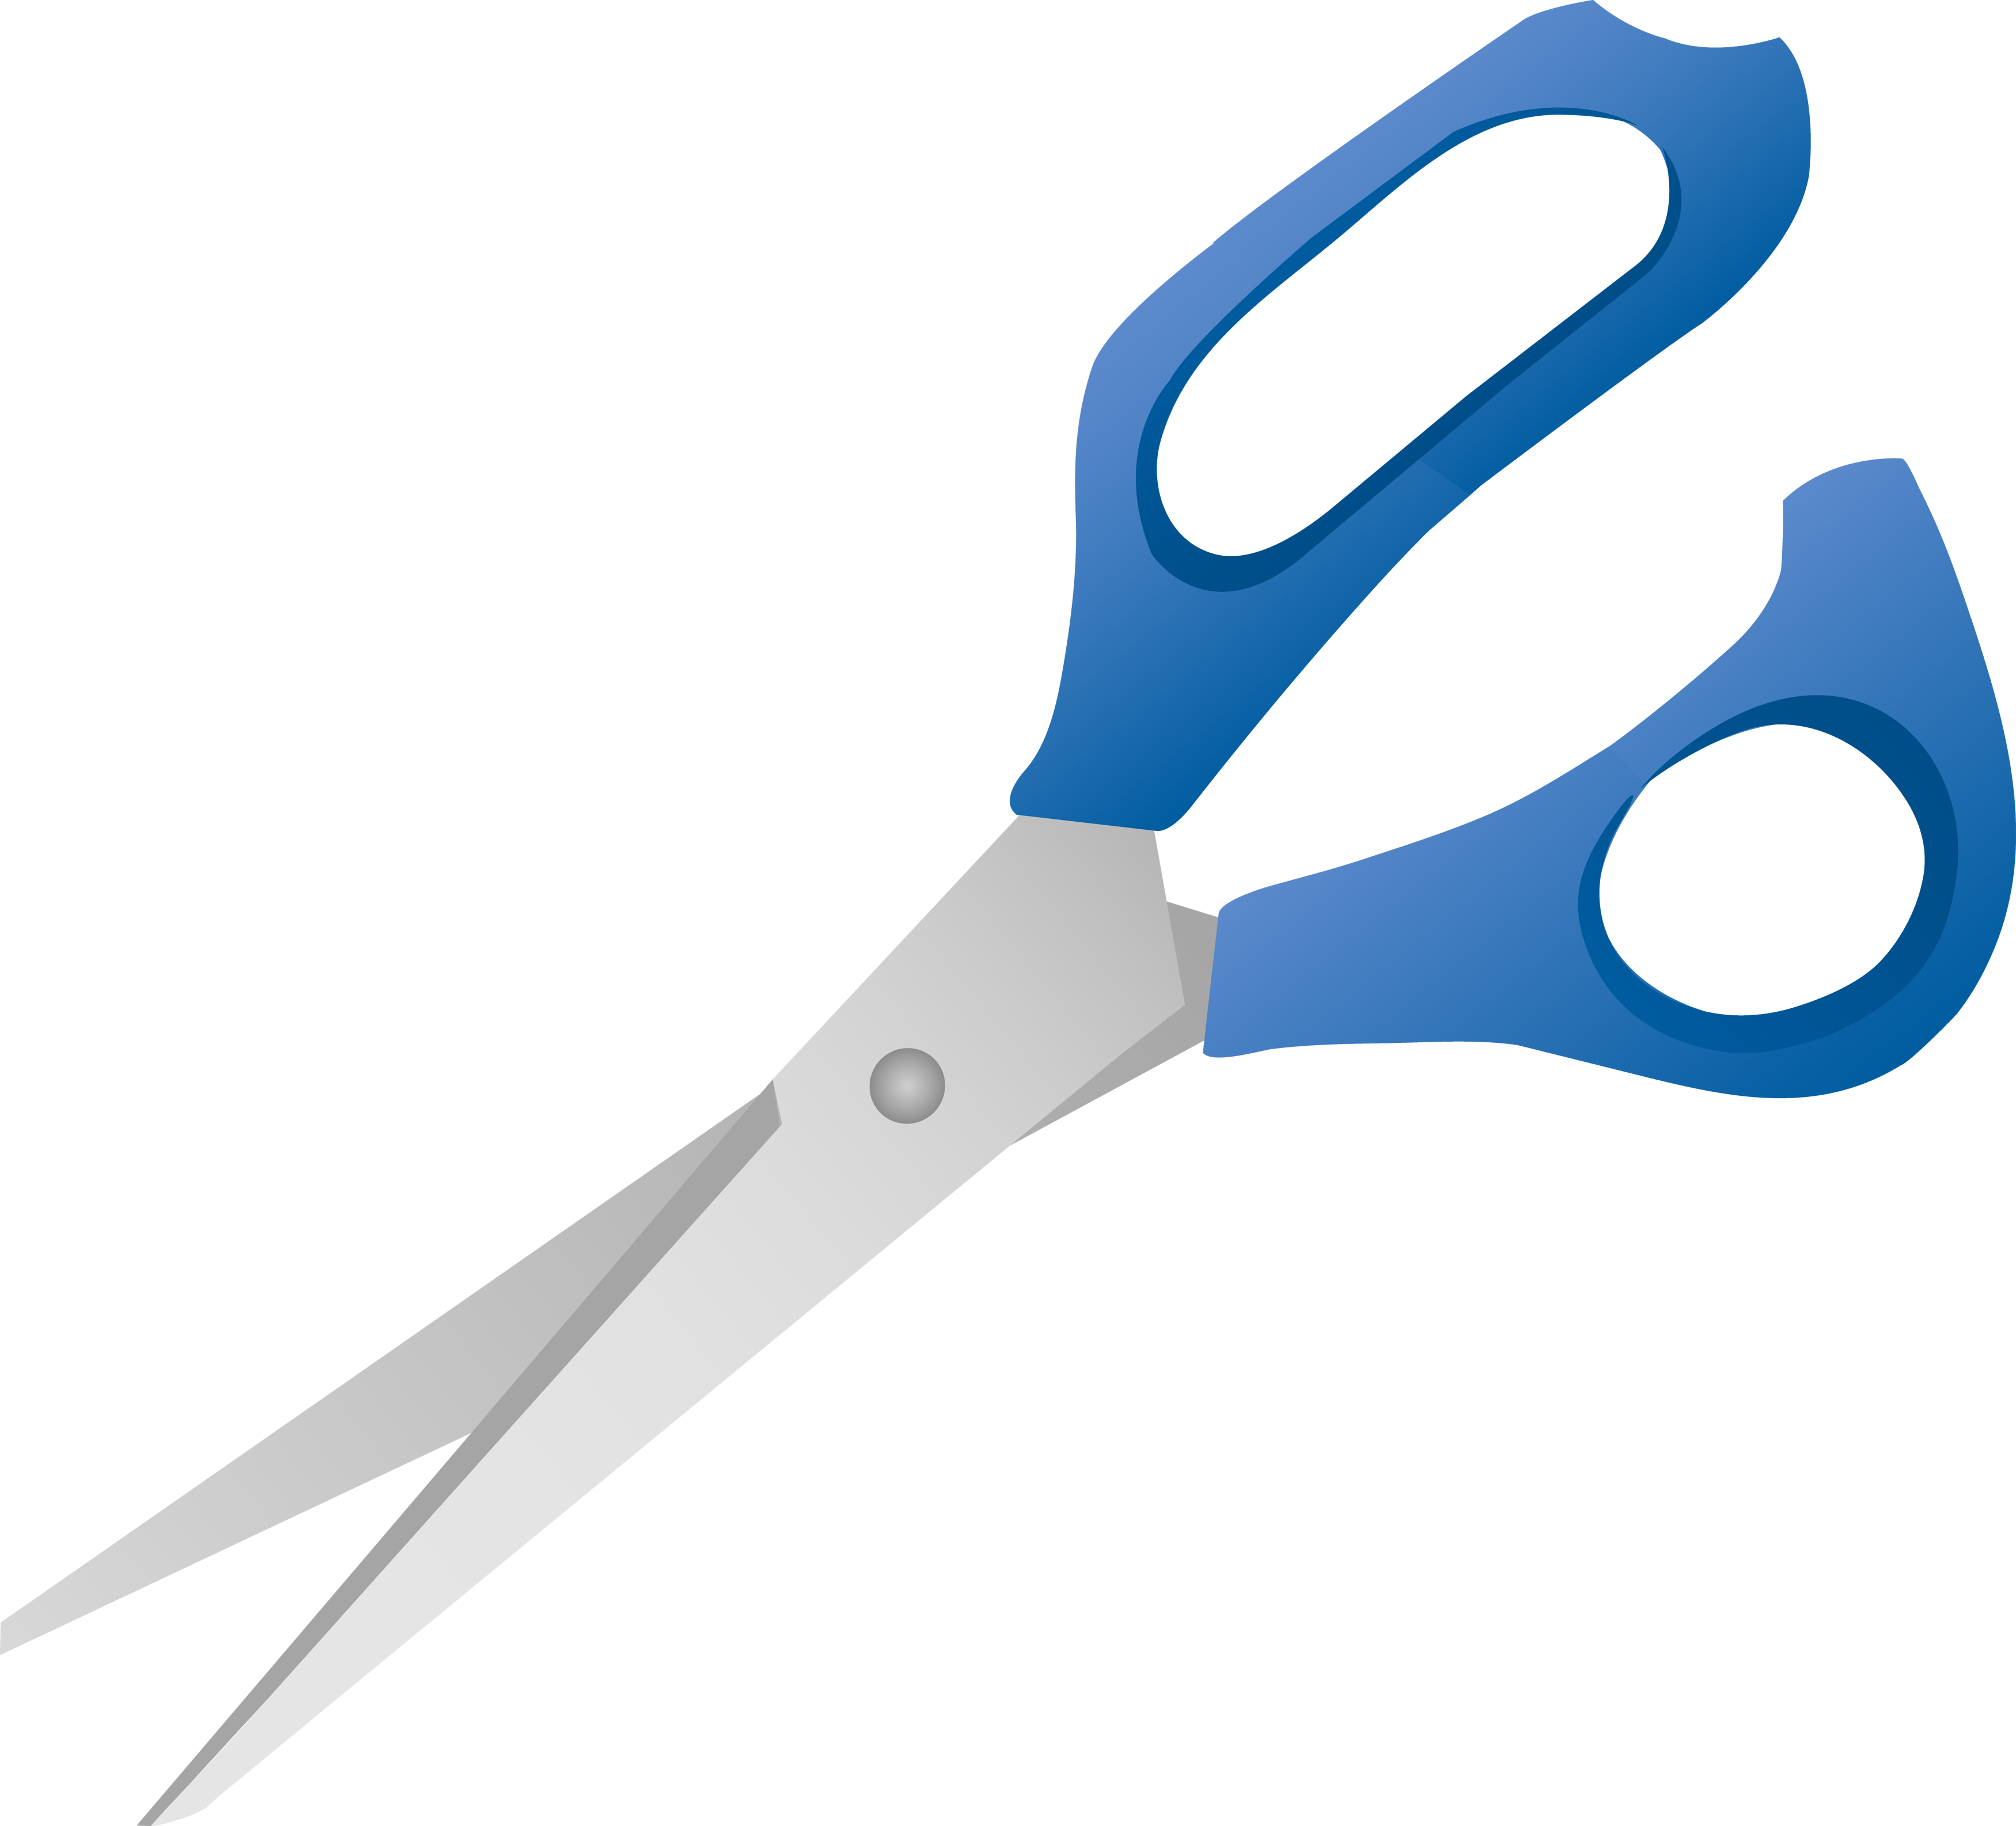 scissors clip art blue, Clipart Panda - Free Clipart Images